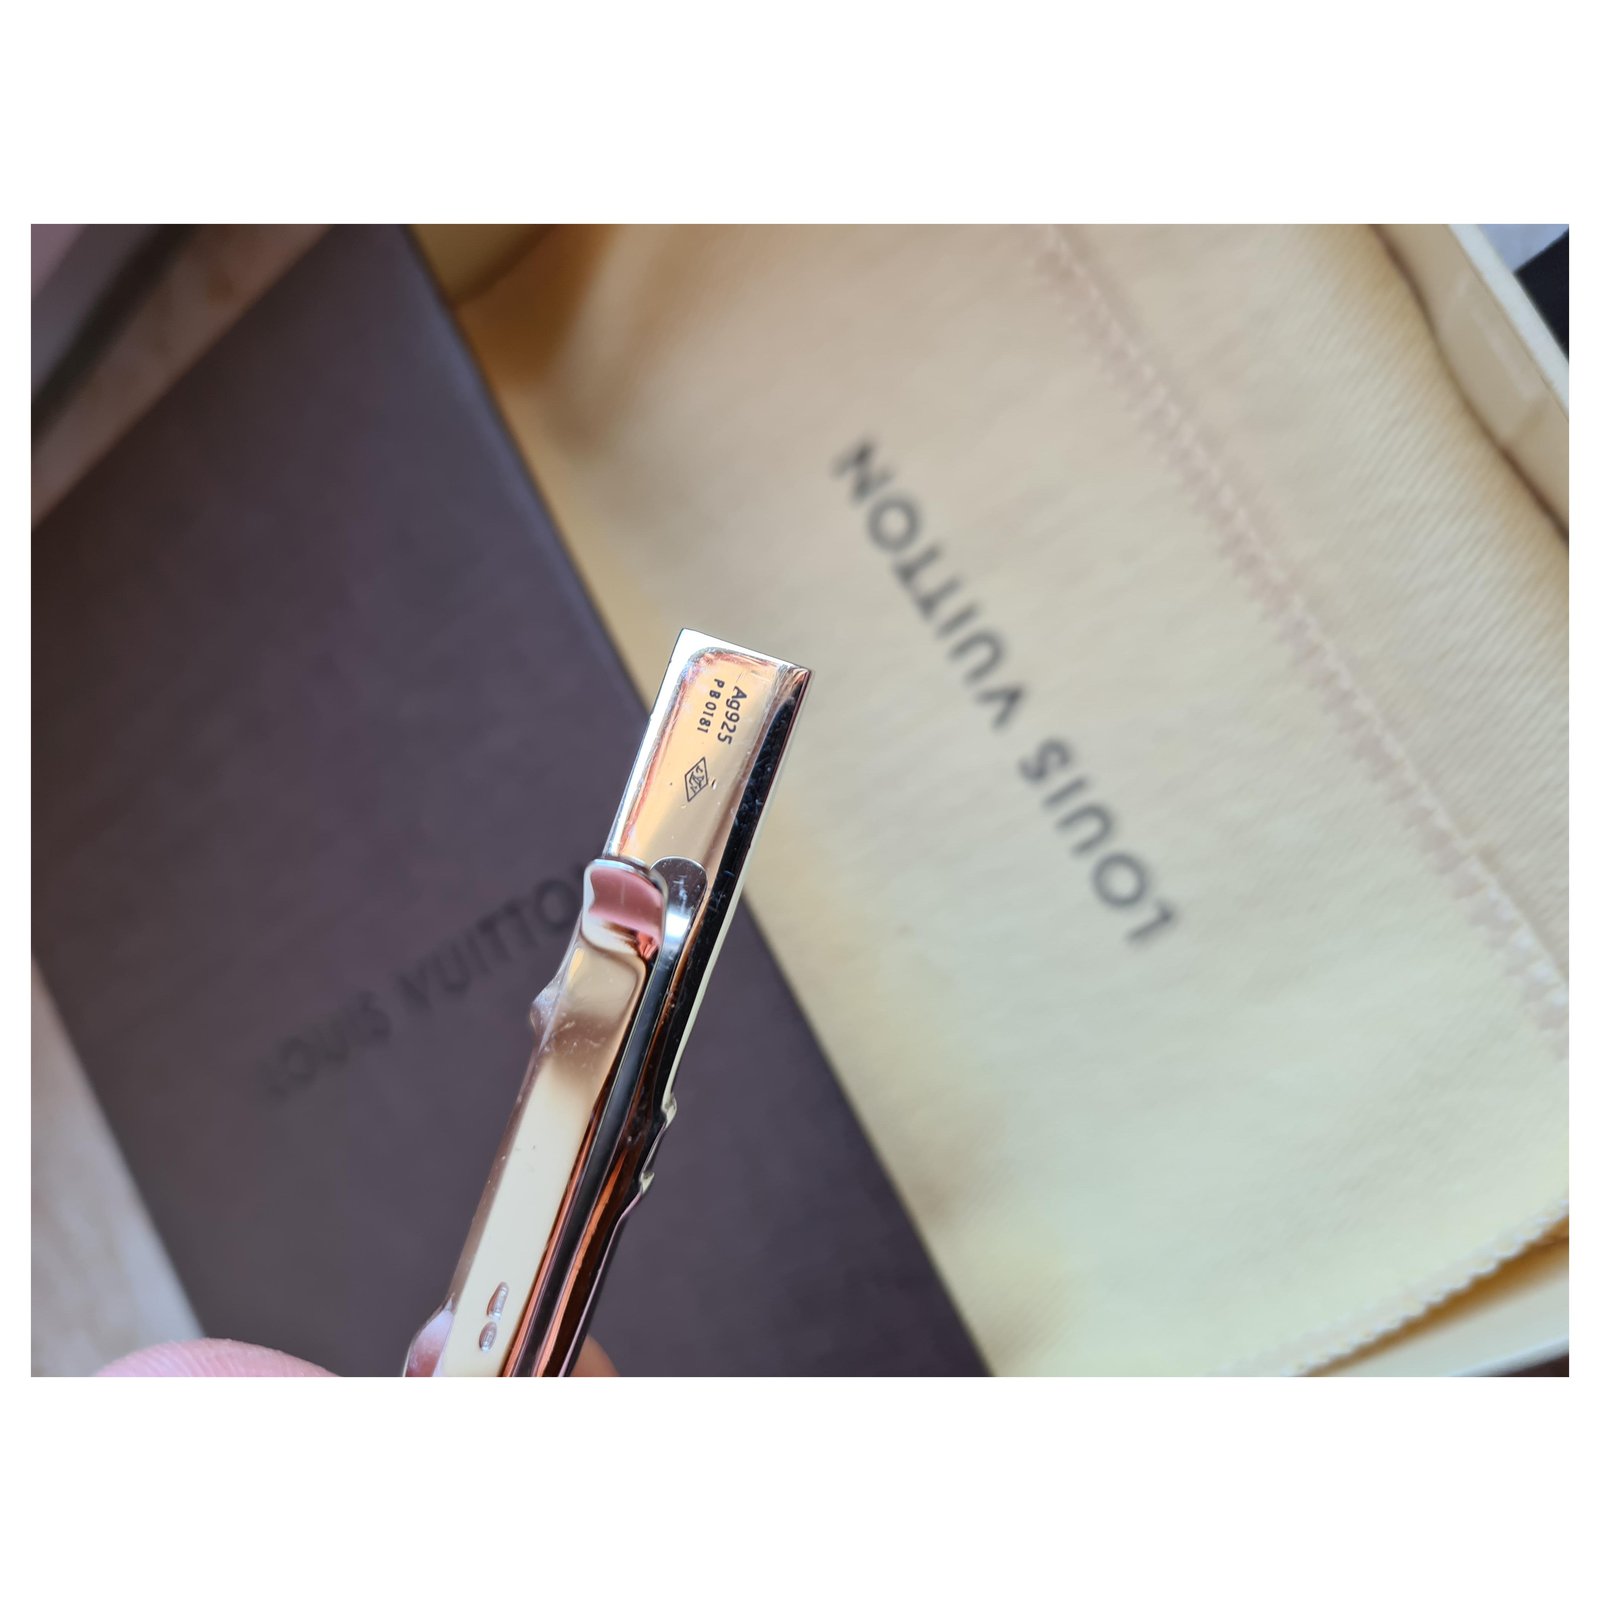 Louis Vuitton Lv initiales tie clip (FERMACRAVATTA LV INITIALES